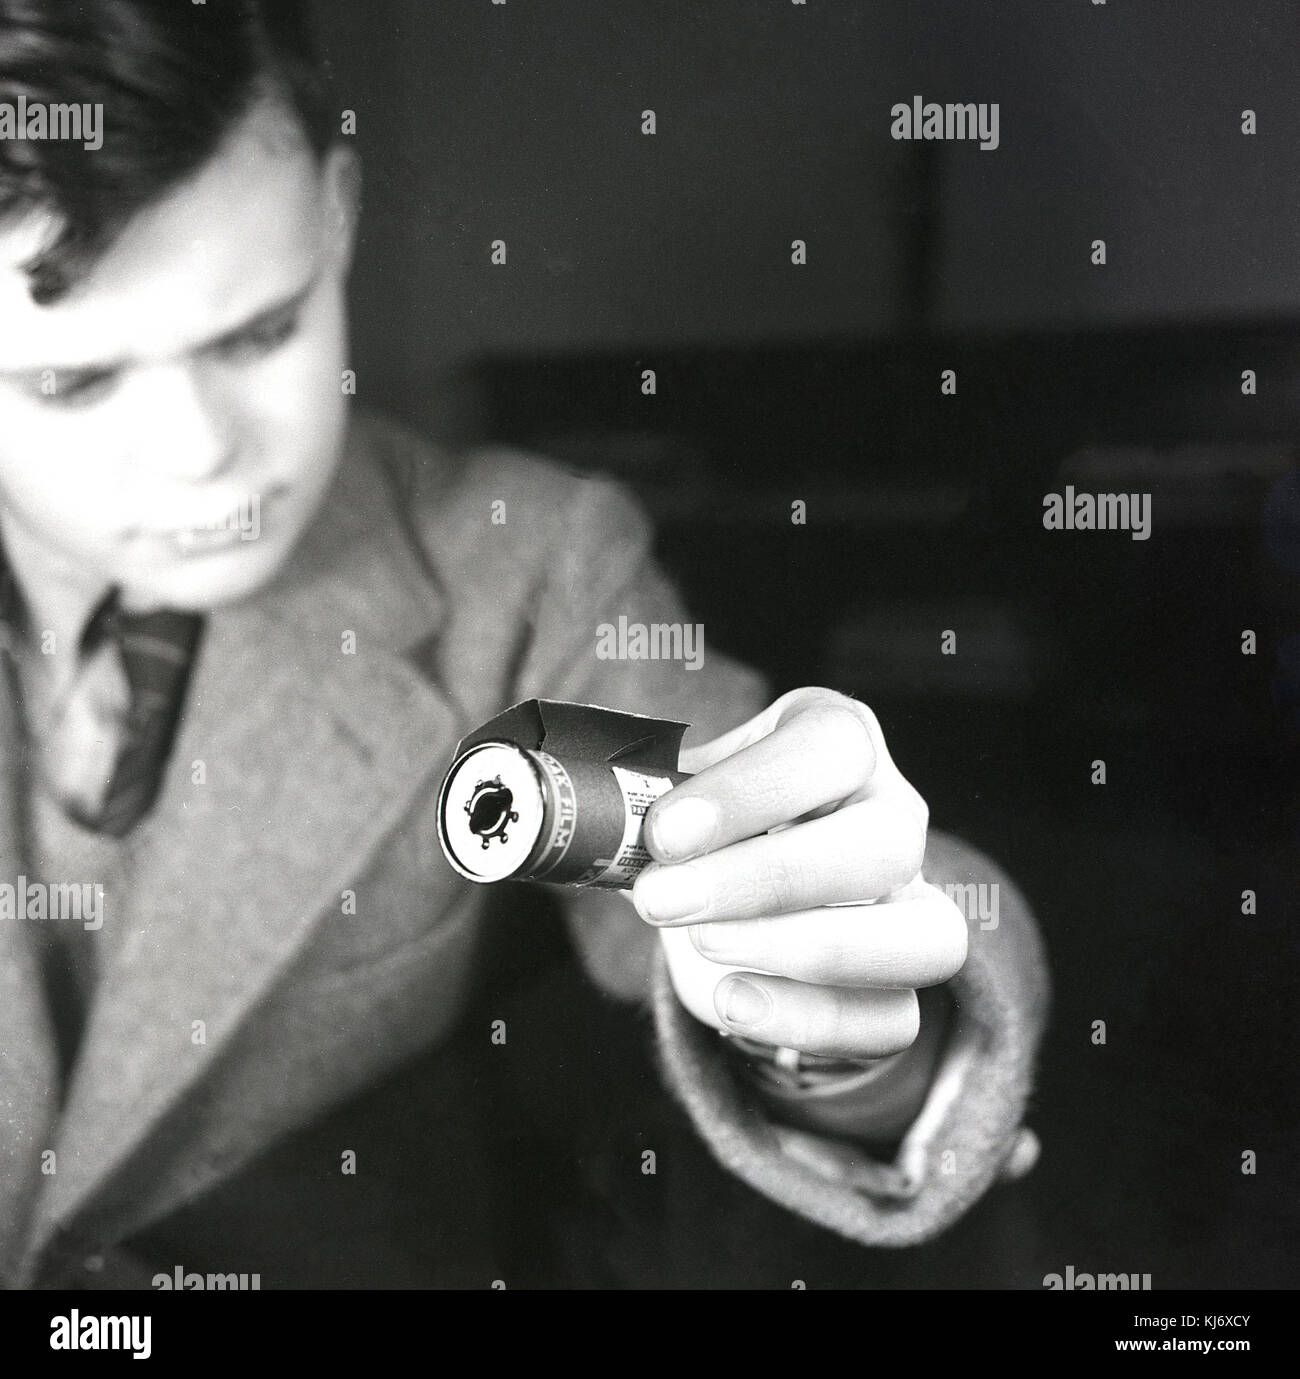 1950 histoical, niño sosteniendo un carrete de metal de rollo de Kodak Film (película) con refuerzo de papel para proteger la película de luz blanca. Rollo de película fue inventado en la década de 1880 y la patente presentada por Kodak. Foto de stock